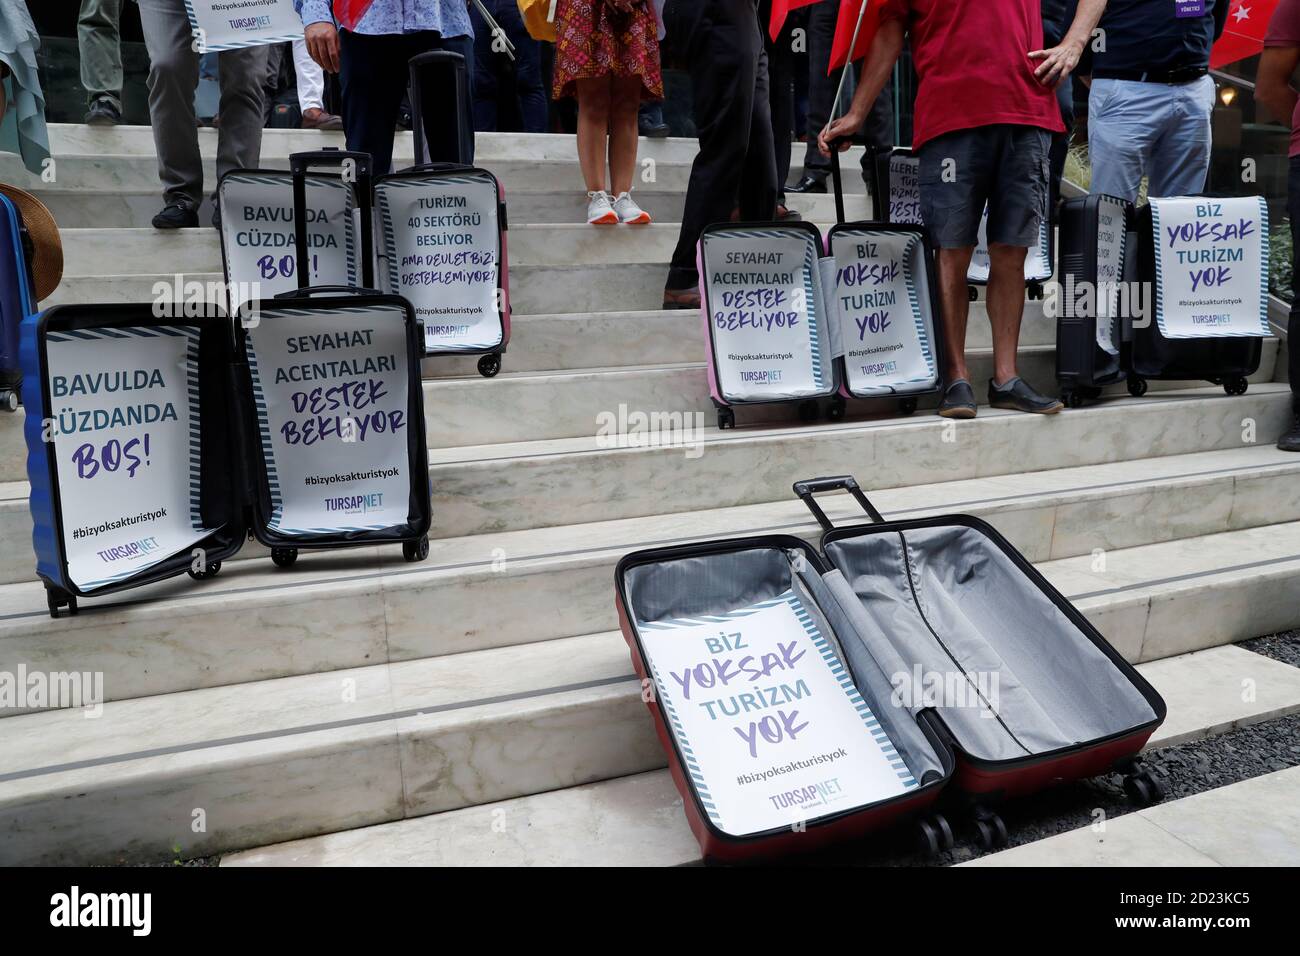 Die Besitzer von Reisebüros zeigen leere Koffer, nachdem sie in einer Presseerklärung die finanzielle Unterstützung der Regierung für das Tourismusgeschäft gefordert hatten, da die Ausbreitung der Coronavirus-Krankheit (COVID-19) am 6. Oktober 2020 in Istanbul, Türkei, fortgesetzt wird. Die Parolen in den Koffern lautete: 'Suitcase und Brieftasche sind leer!' Und „Reisebüros warten auf Unterstützung“. REUTERS/Murad Sezer Stockfoto